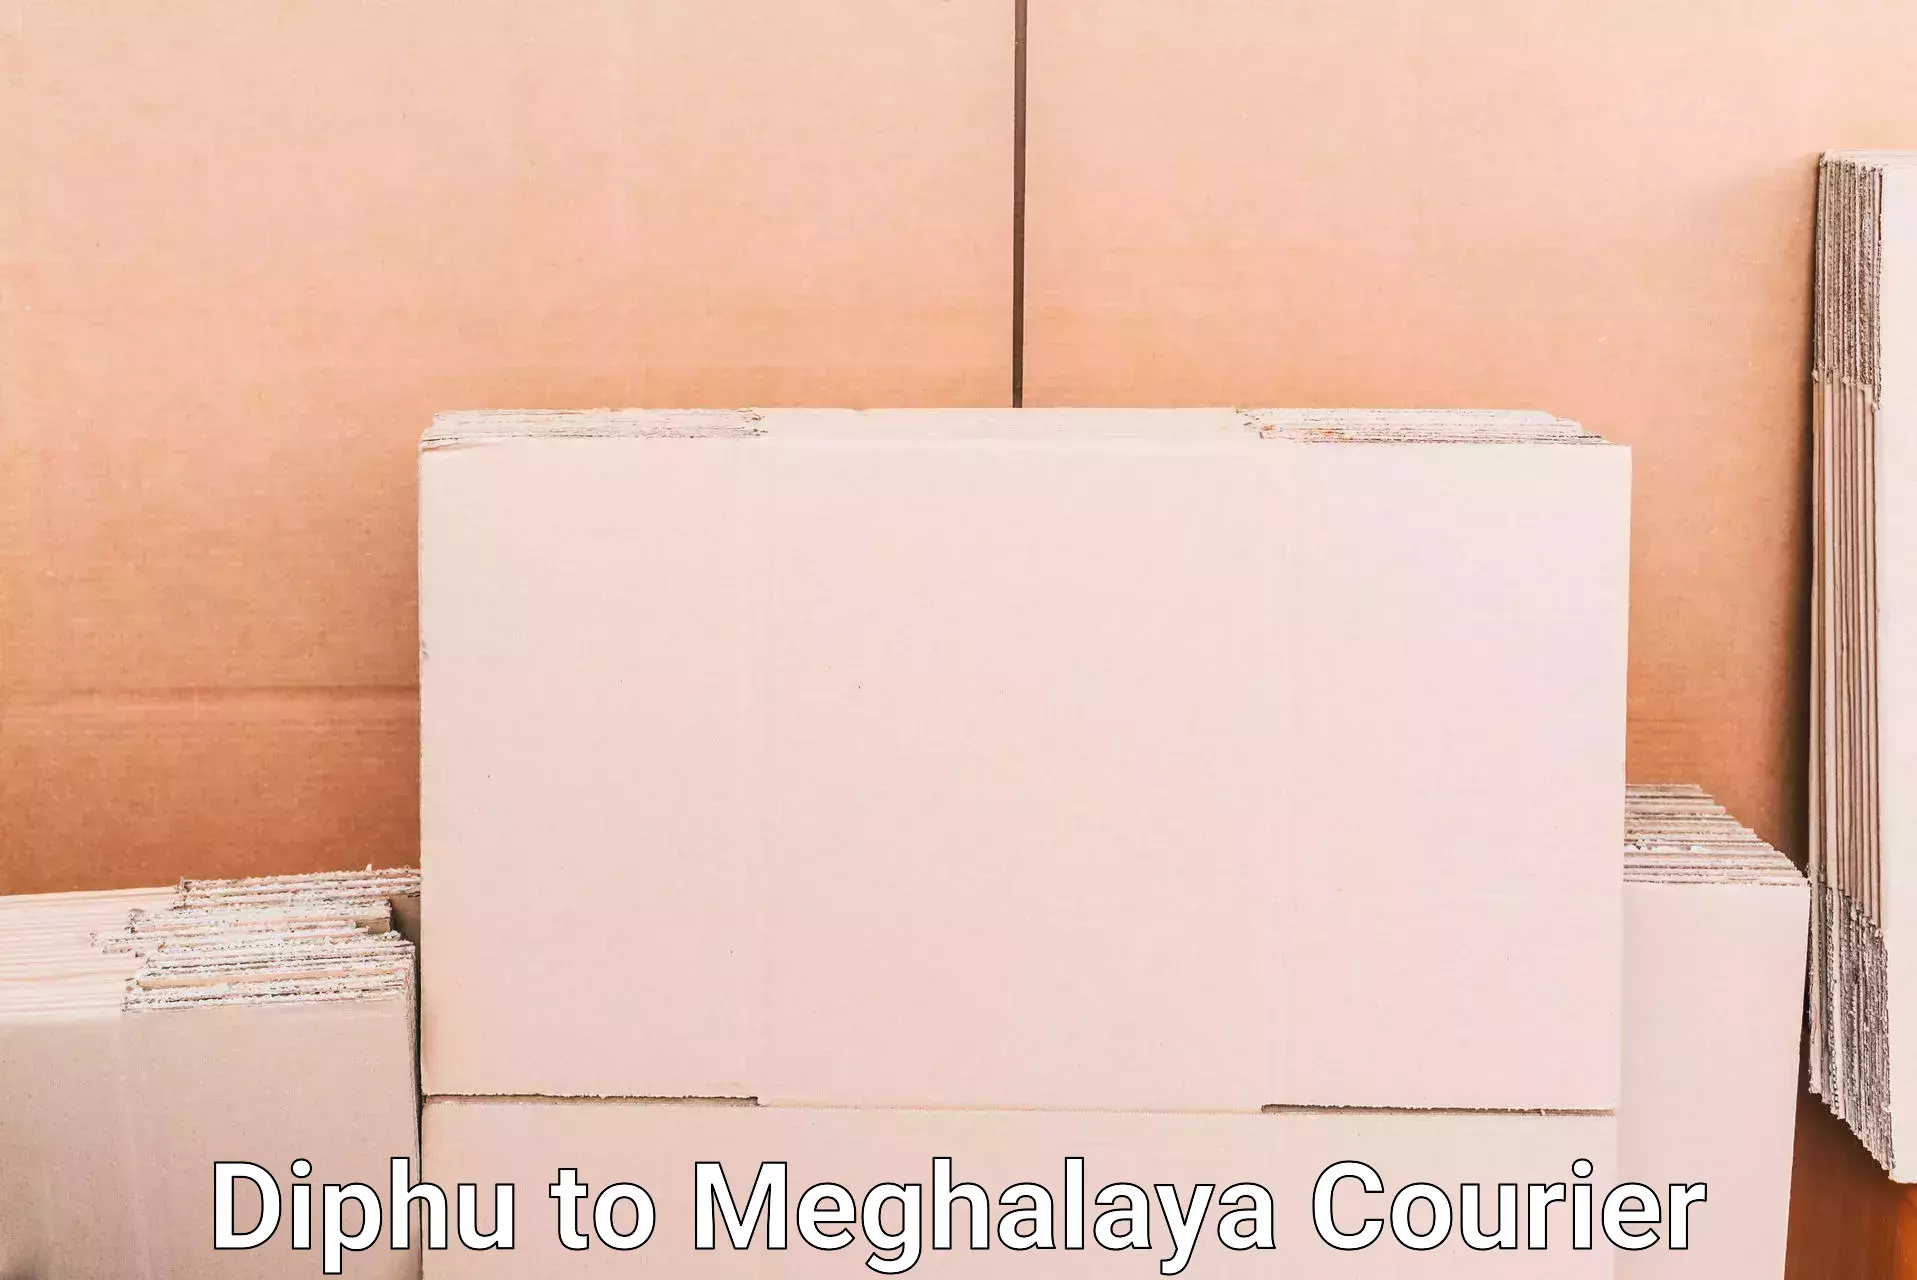 Baggage transport network Diphu to Meghalaya